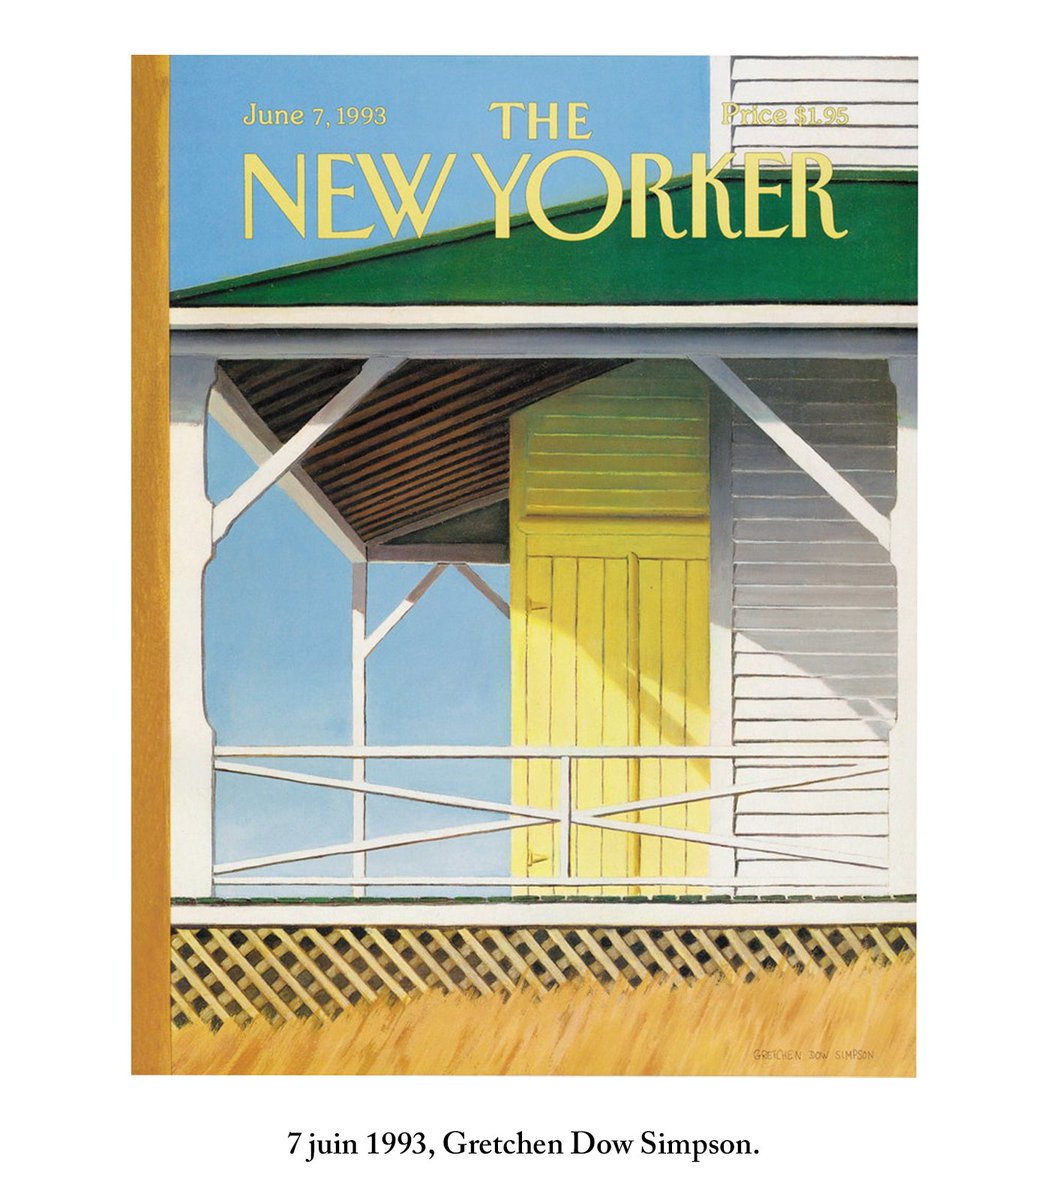 Jusqu’aux années 50 le New Yorker cultive un regard subtil sur l’époque.Puis il s’endort au cours des sixties, seventies, eighties. A tel point qu’on se retrouve parfois avec des peintures de porches en couverture. C’est… contemplatif. 